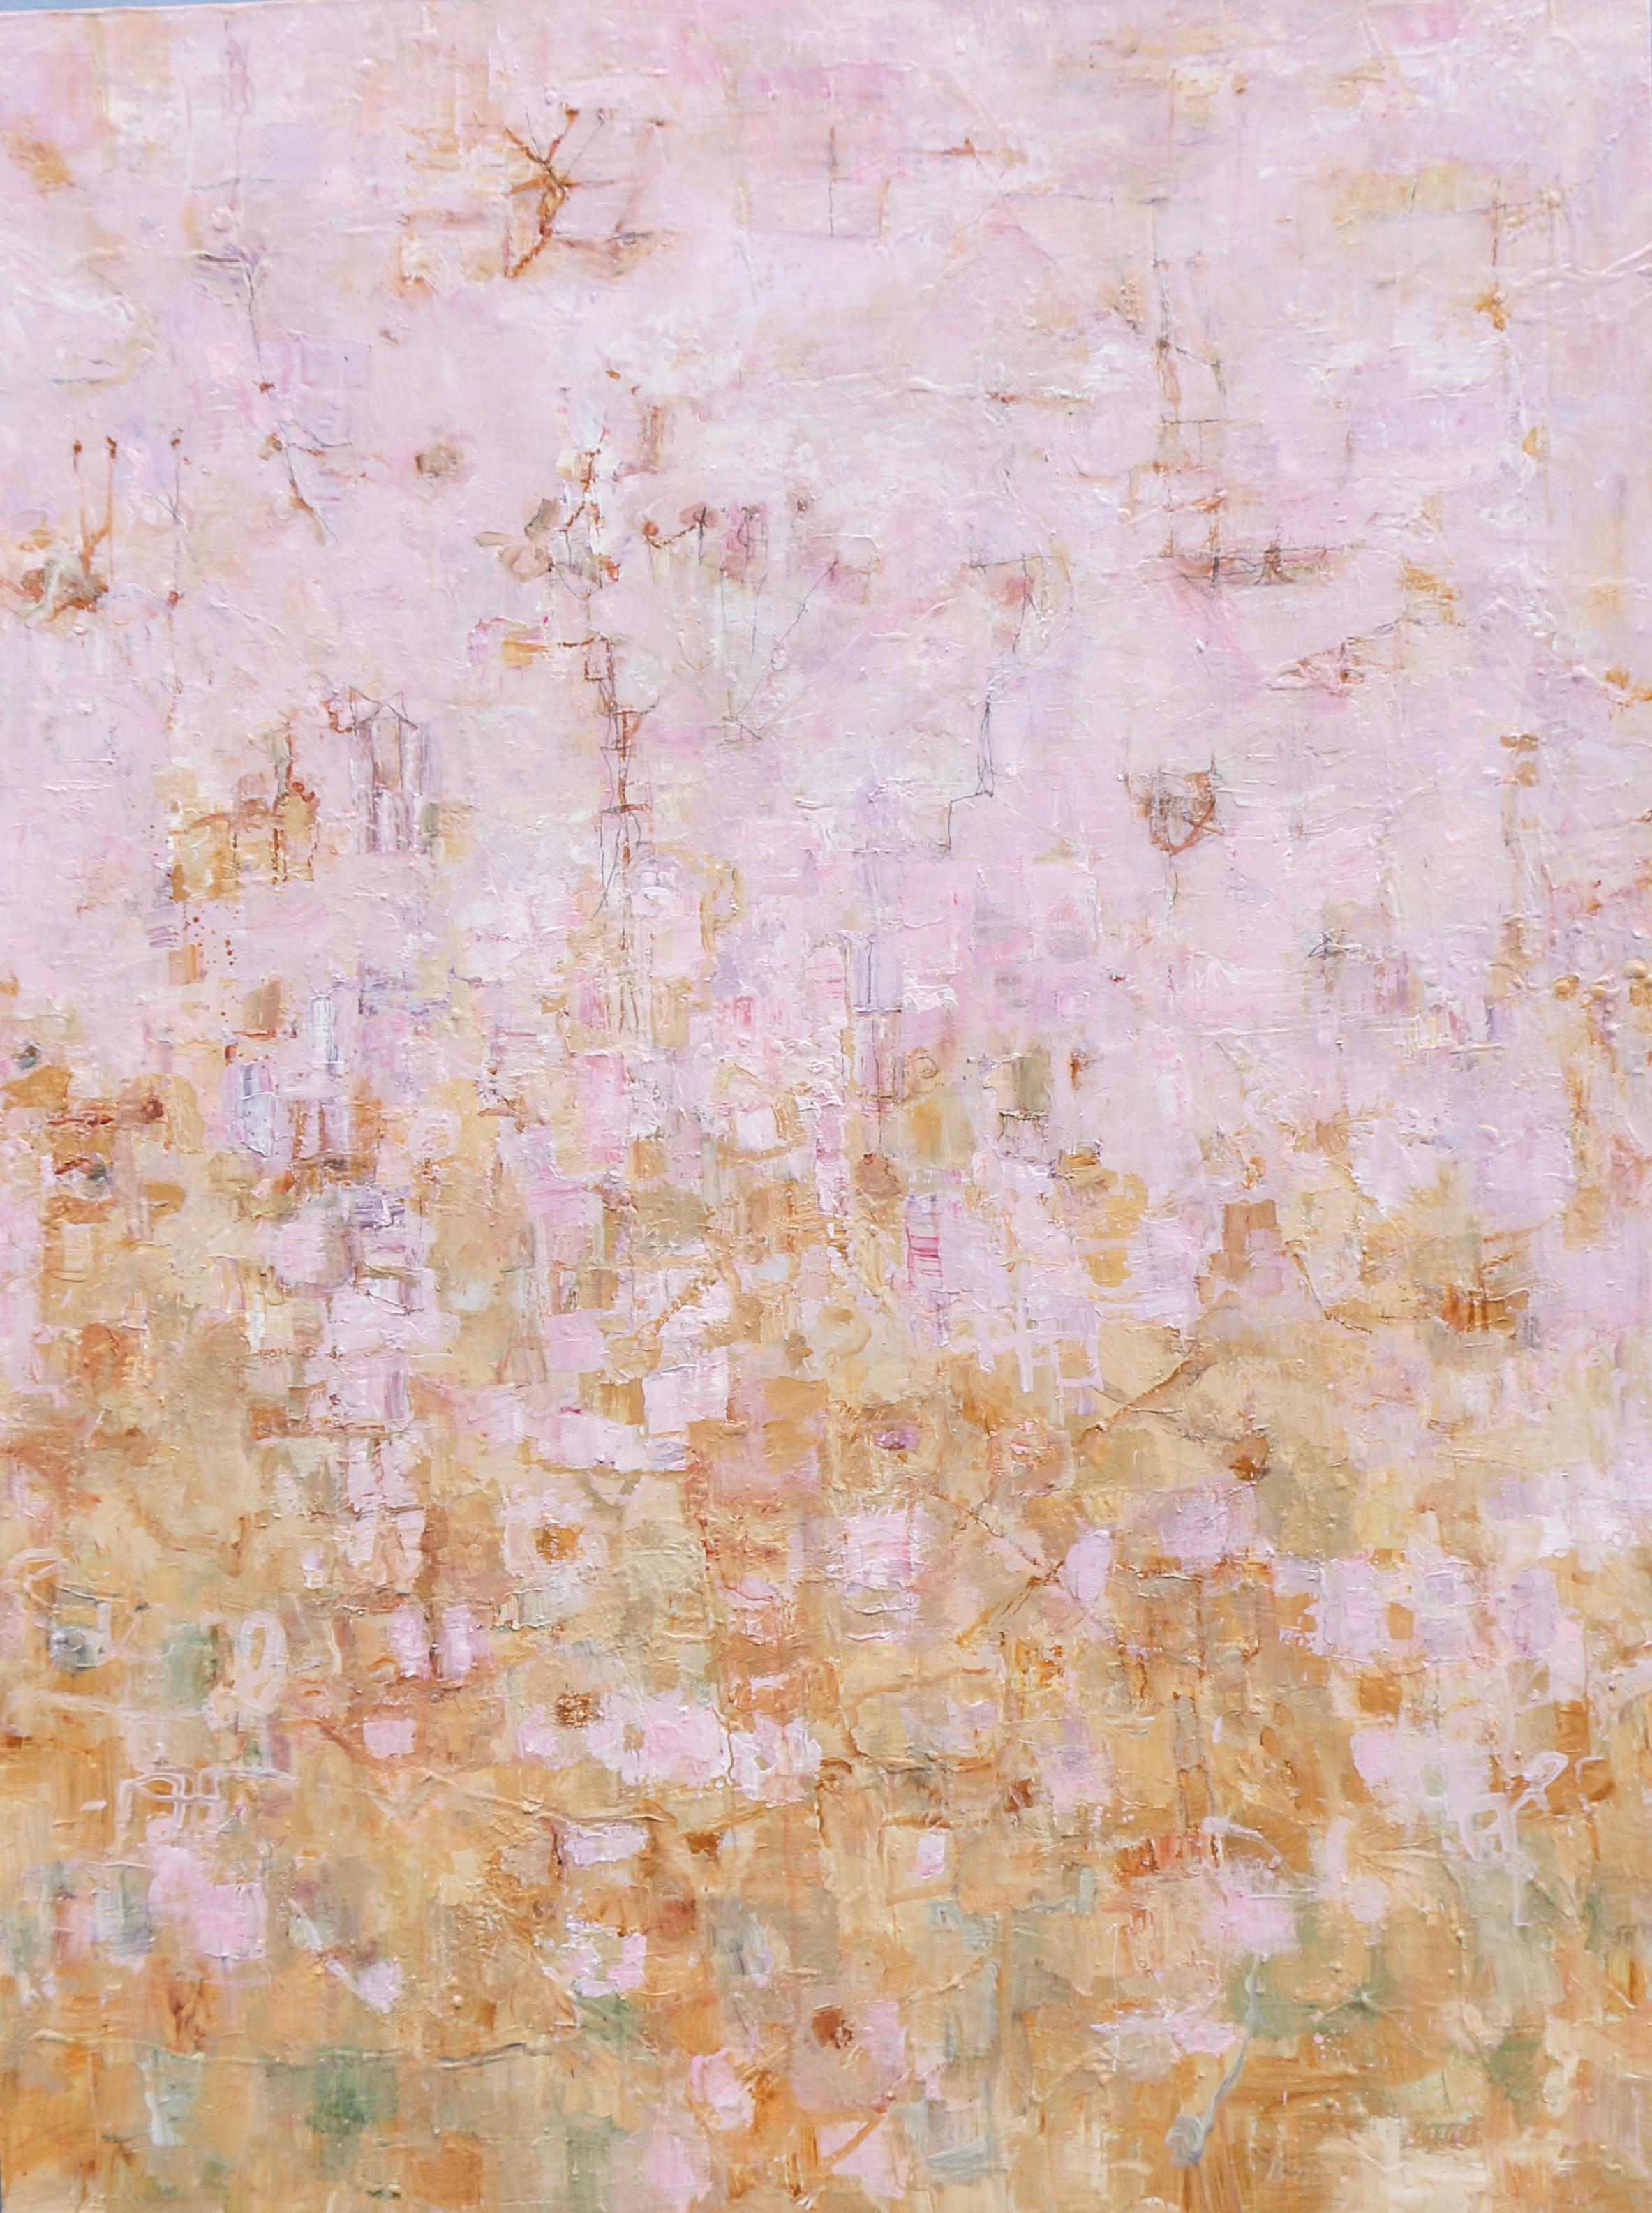 Abstract Painting Ragellah Rourke - Le retour du printemps (peinture acrylique abstraite moderne en rose, jaune et or)